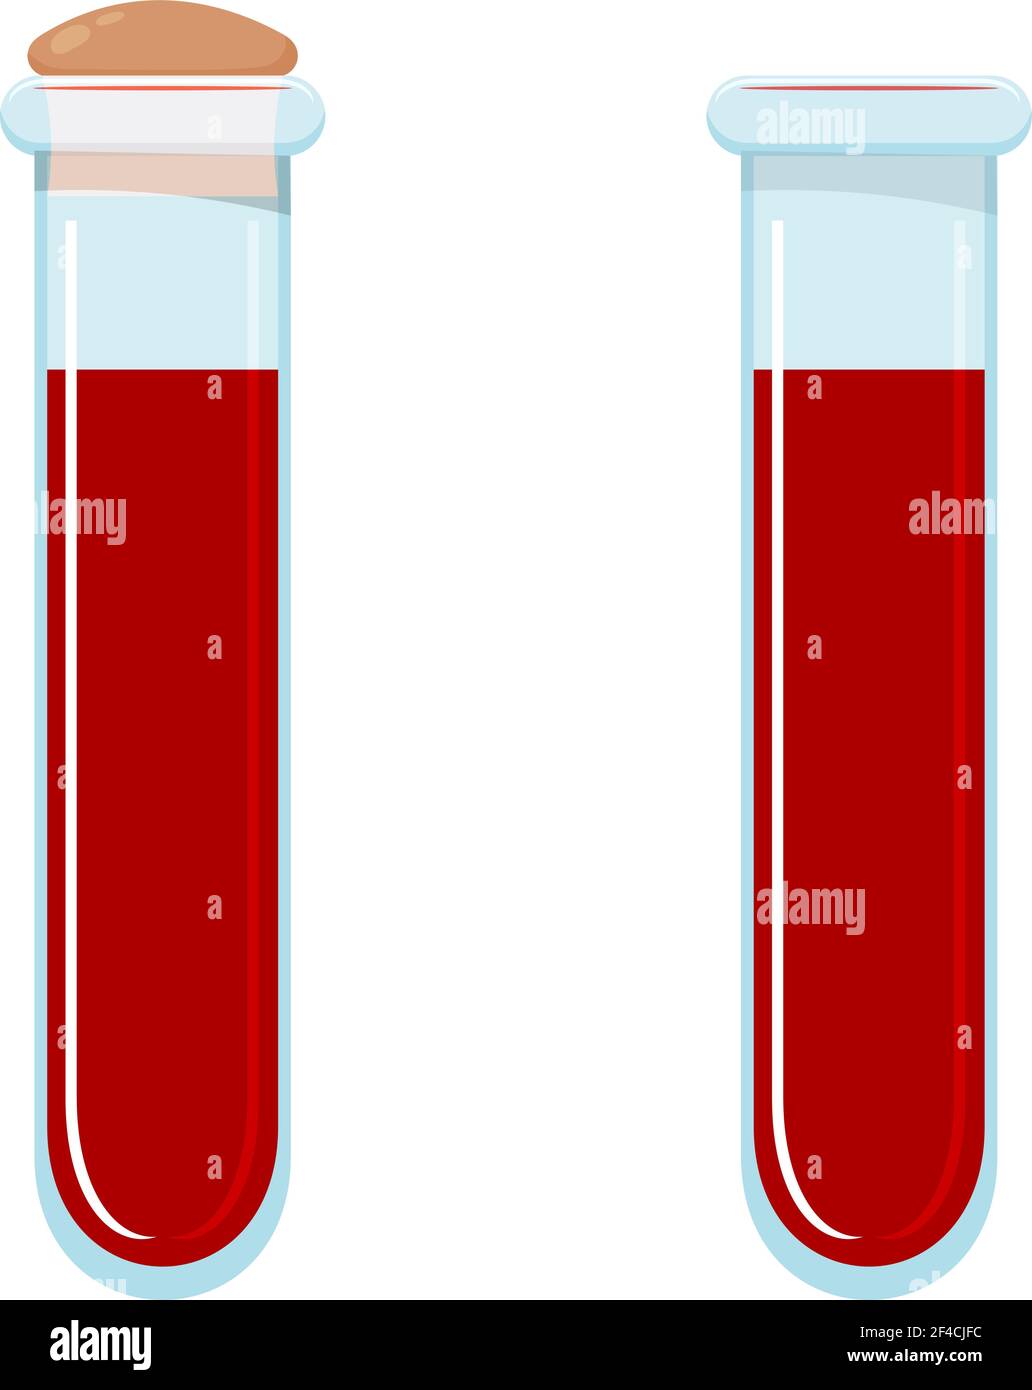 Vektordarstellung eines Glasröhrchens Blut. Bluttest. Cartoon-Stil. Reagenzgläser mit Blut auf weißem Hintergrund, isoliertes Objekt. Medizinische Forschung Stock Vektor